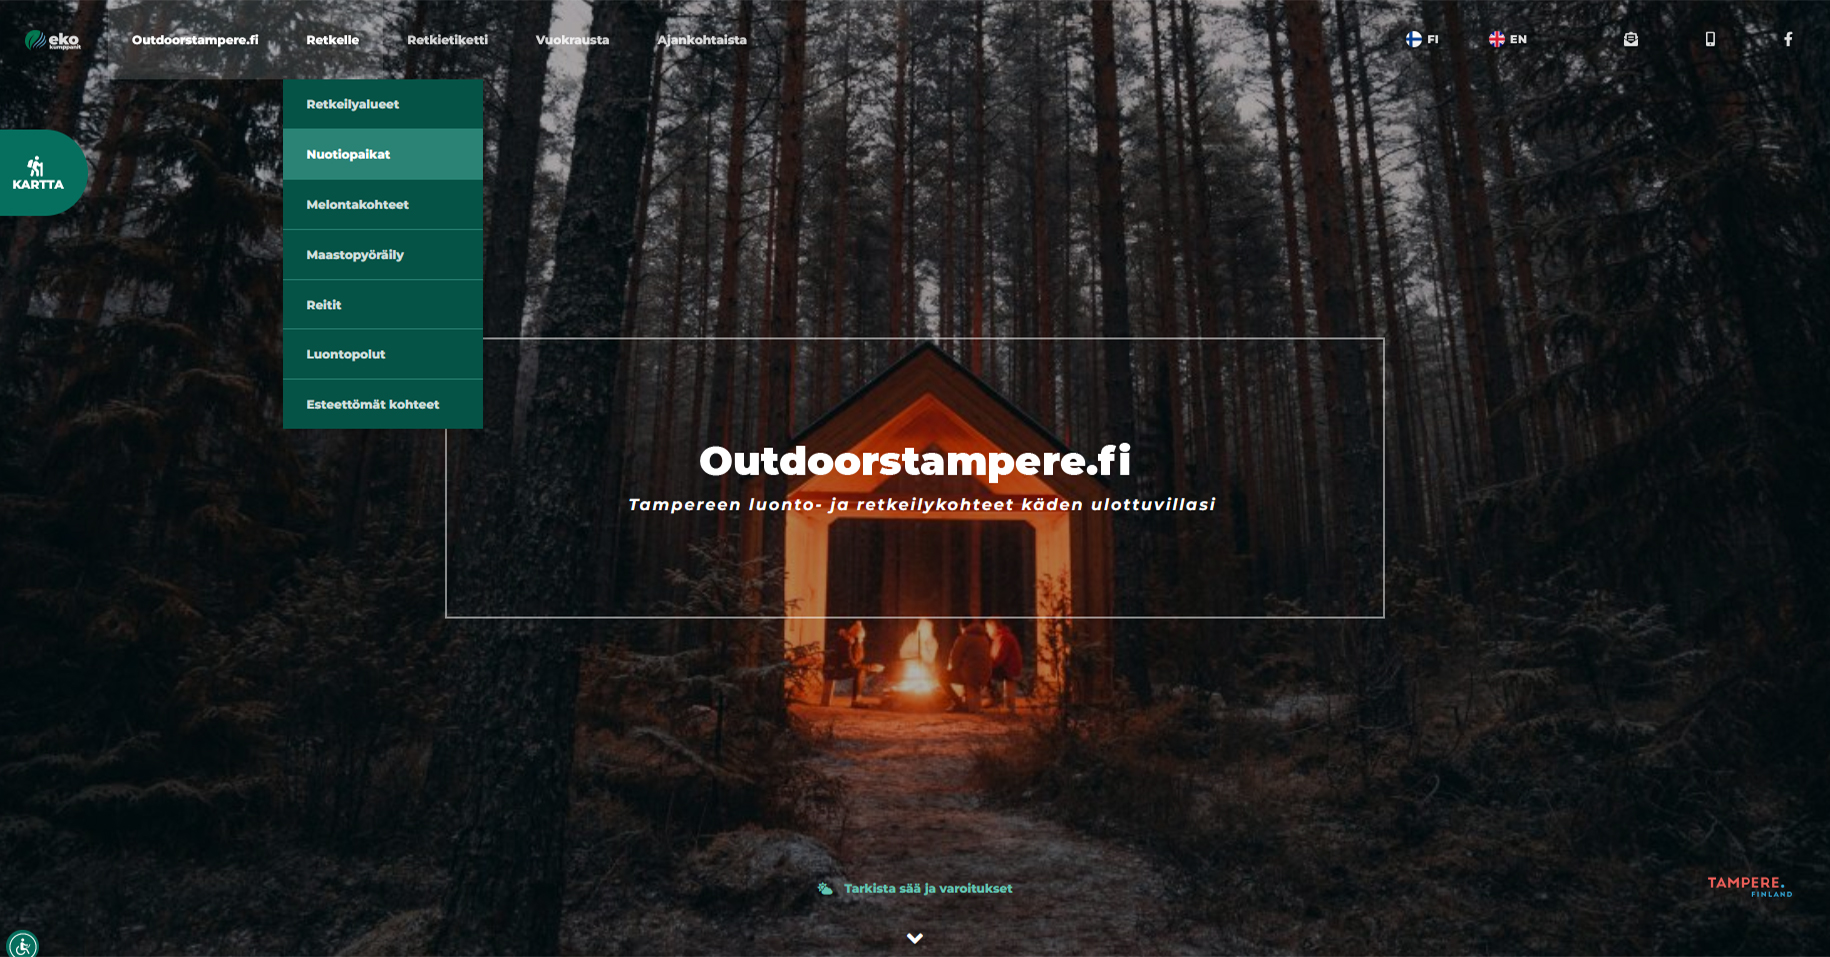 Outdoorstampere.fi on julkaistu!